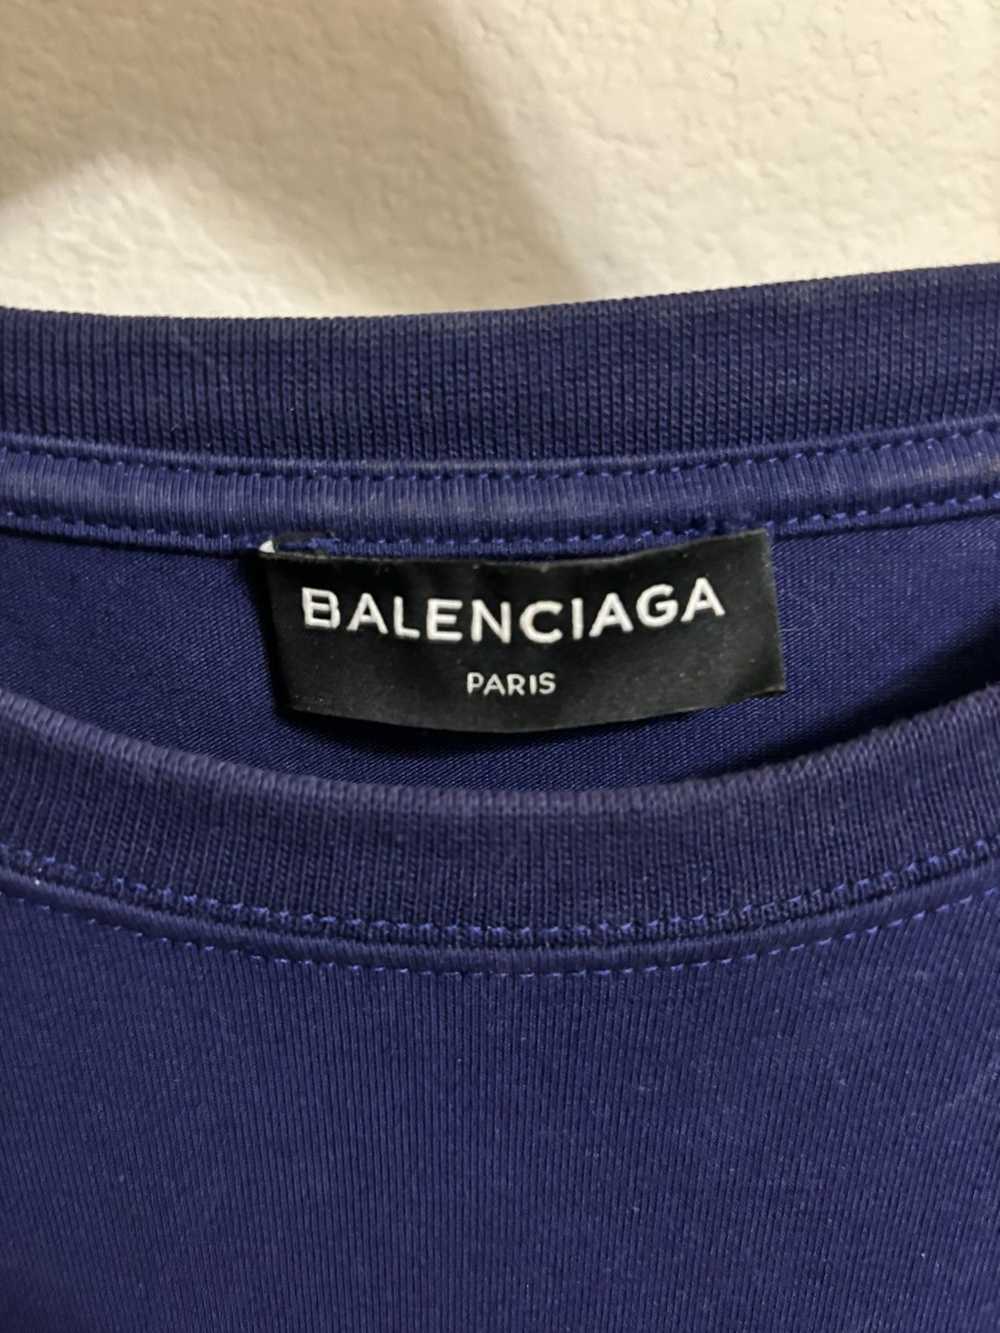 Balenciaga Balenciaga T-shirt 2017 - image 4